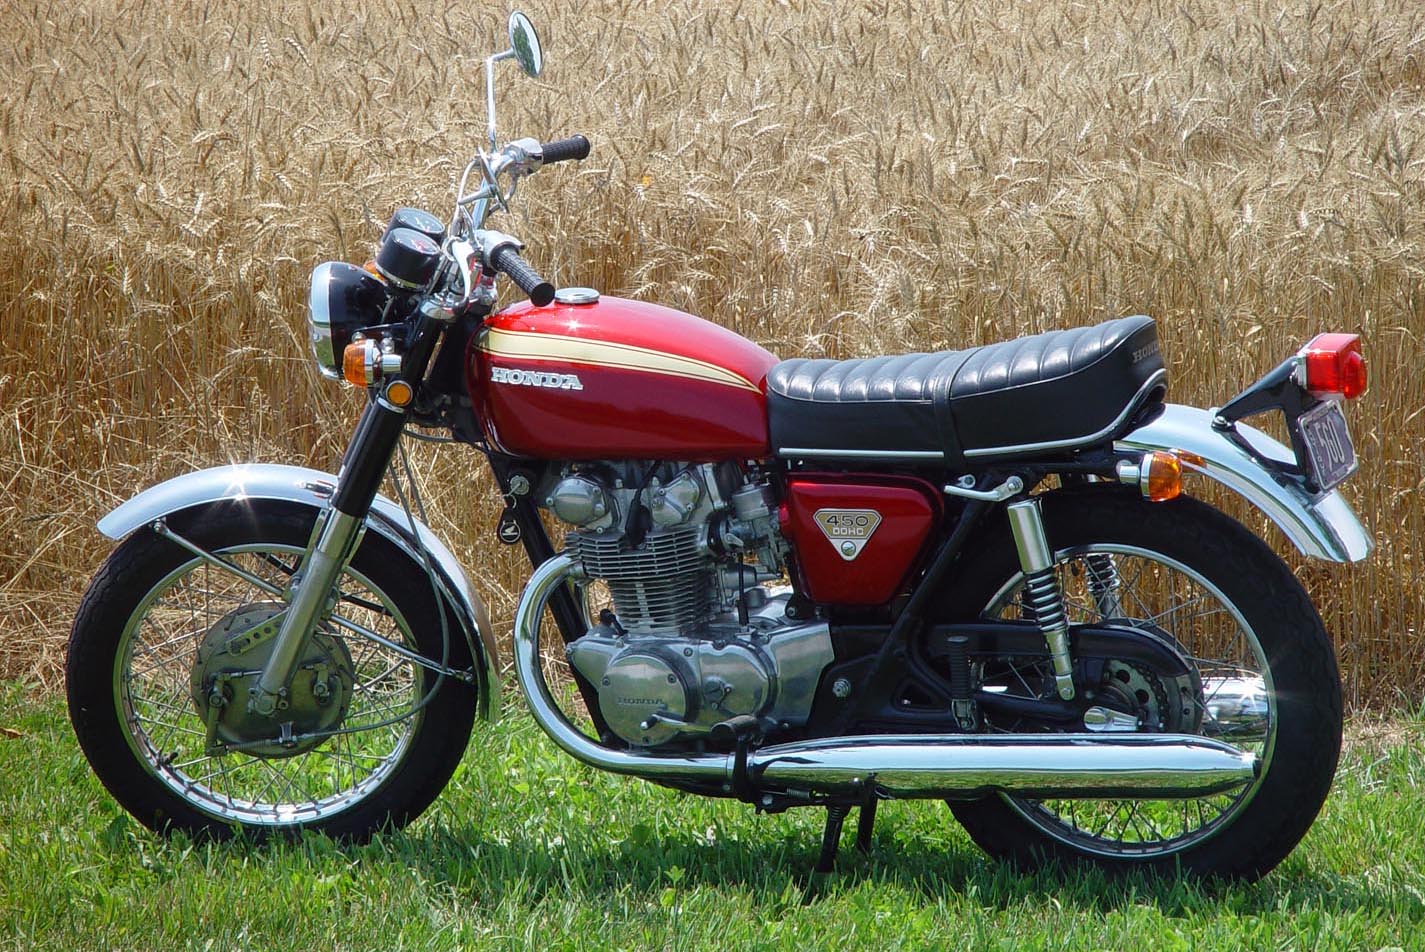 Honda CB450